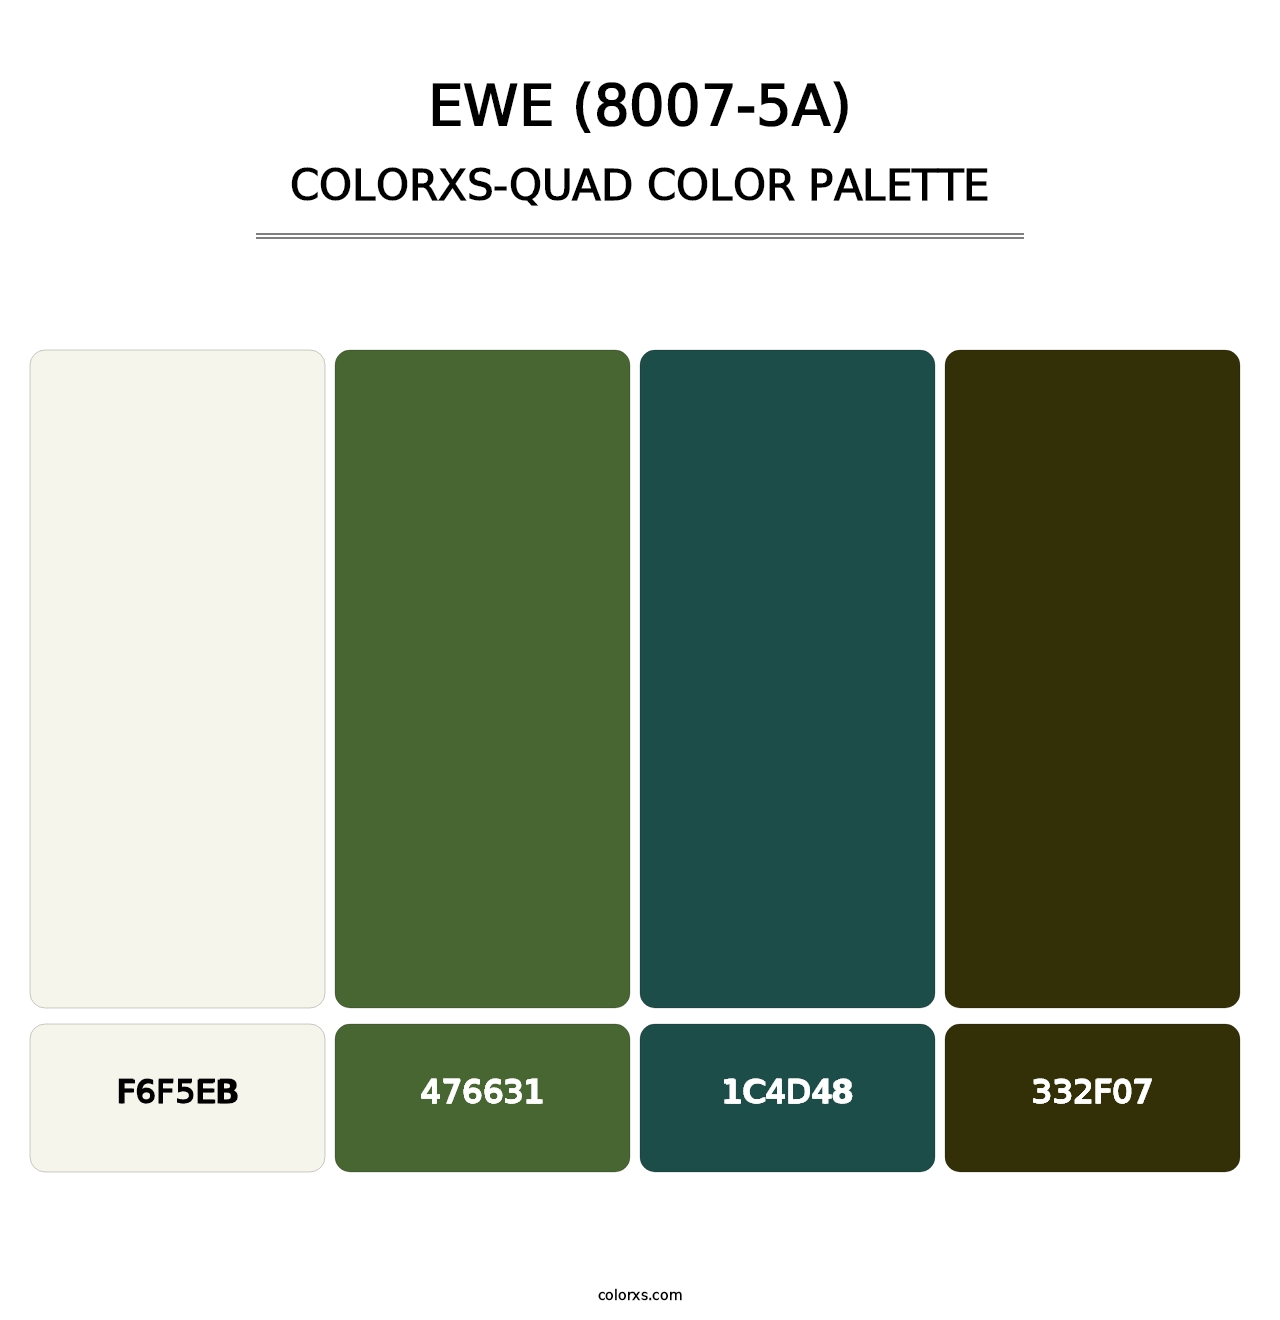 Ewe (8007-5A) - Colorxs Quad Palette